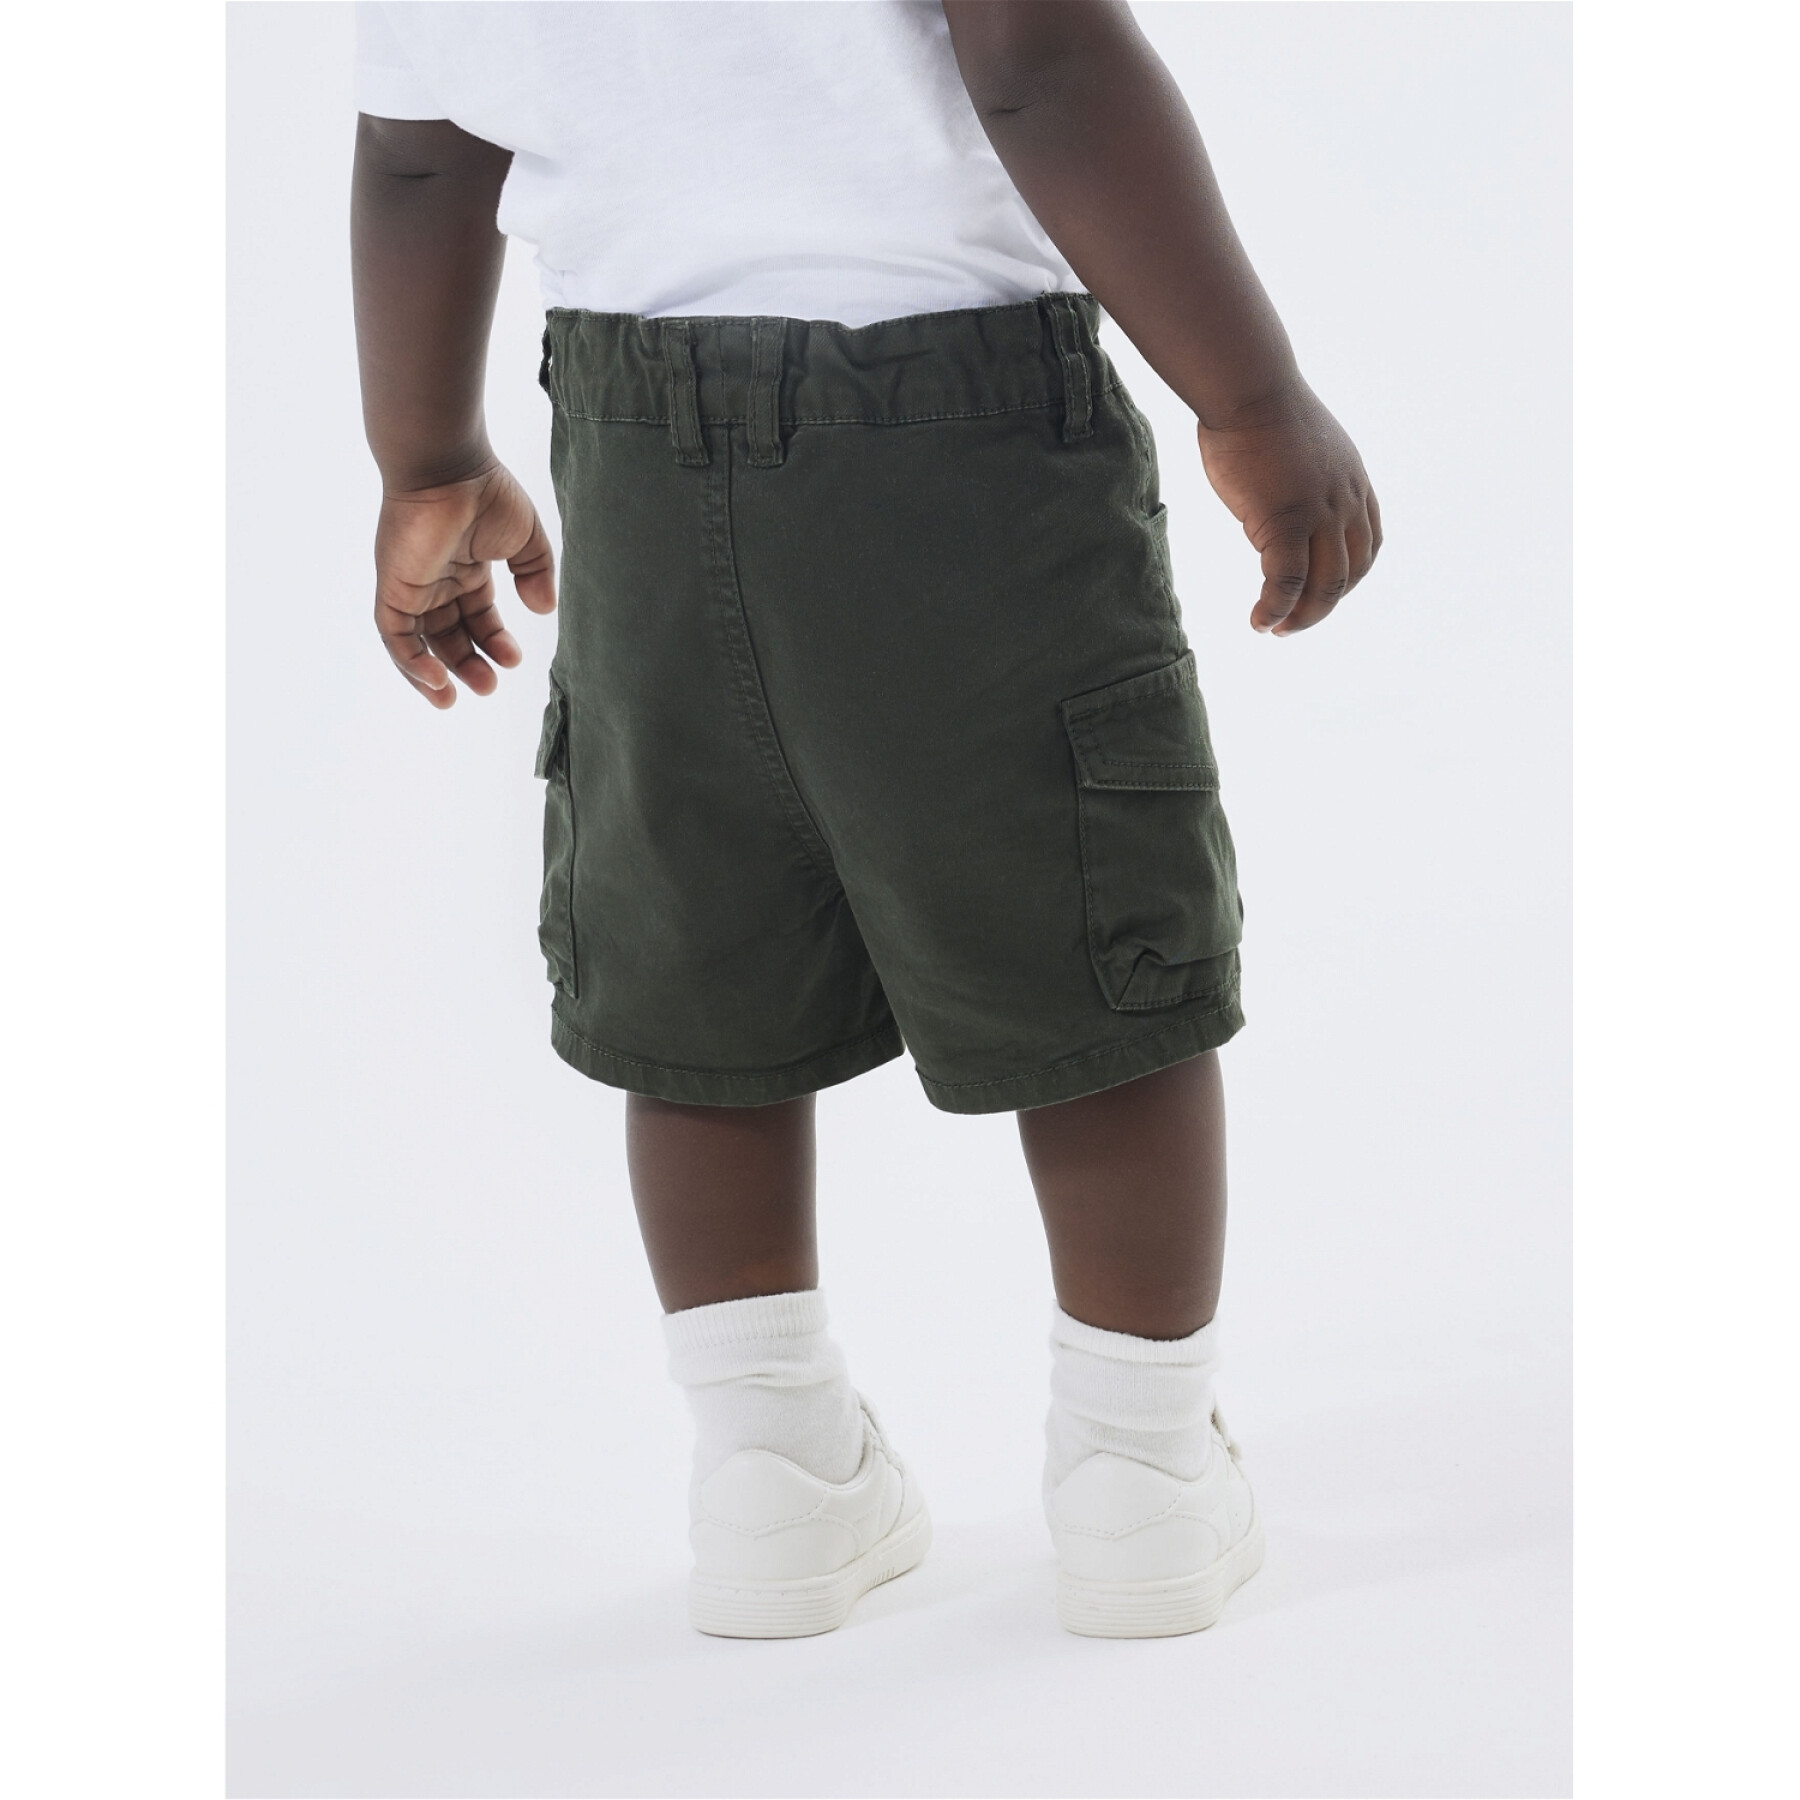 Baby boy cargo shorts Name it Ben 1771-HI